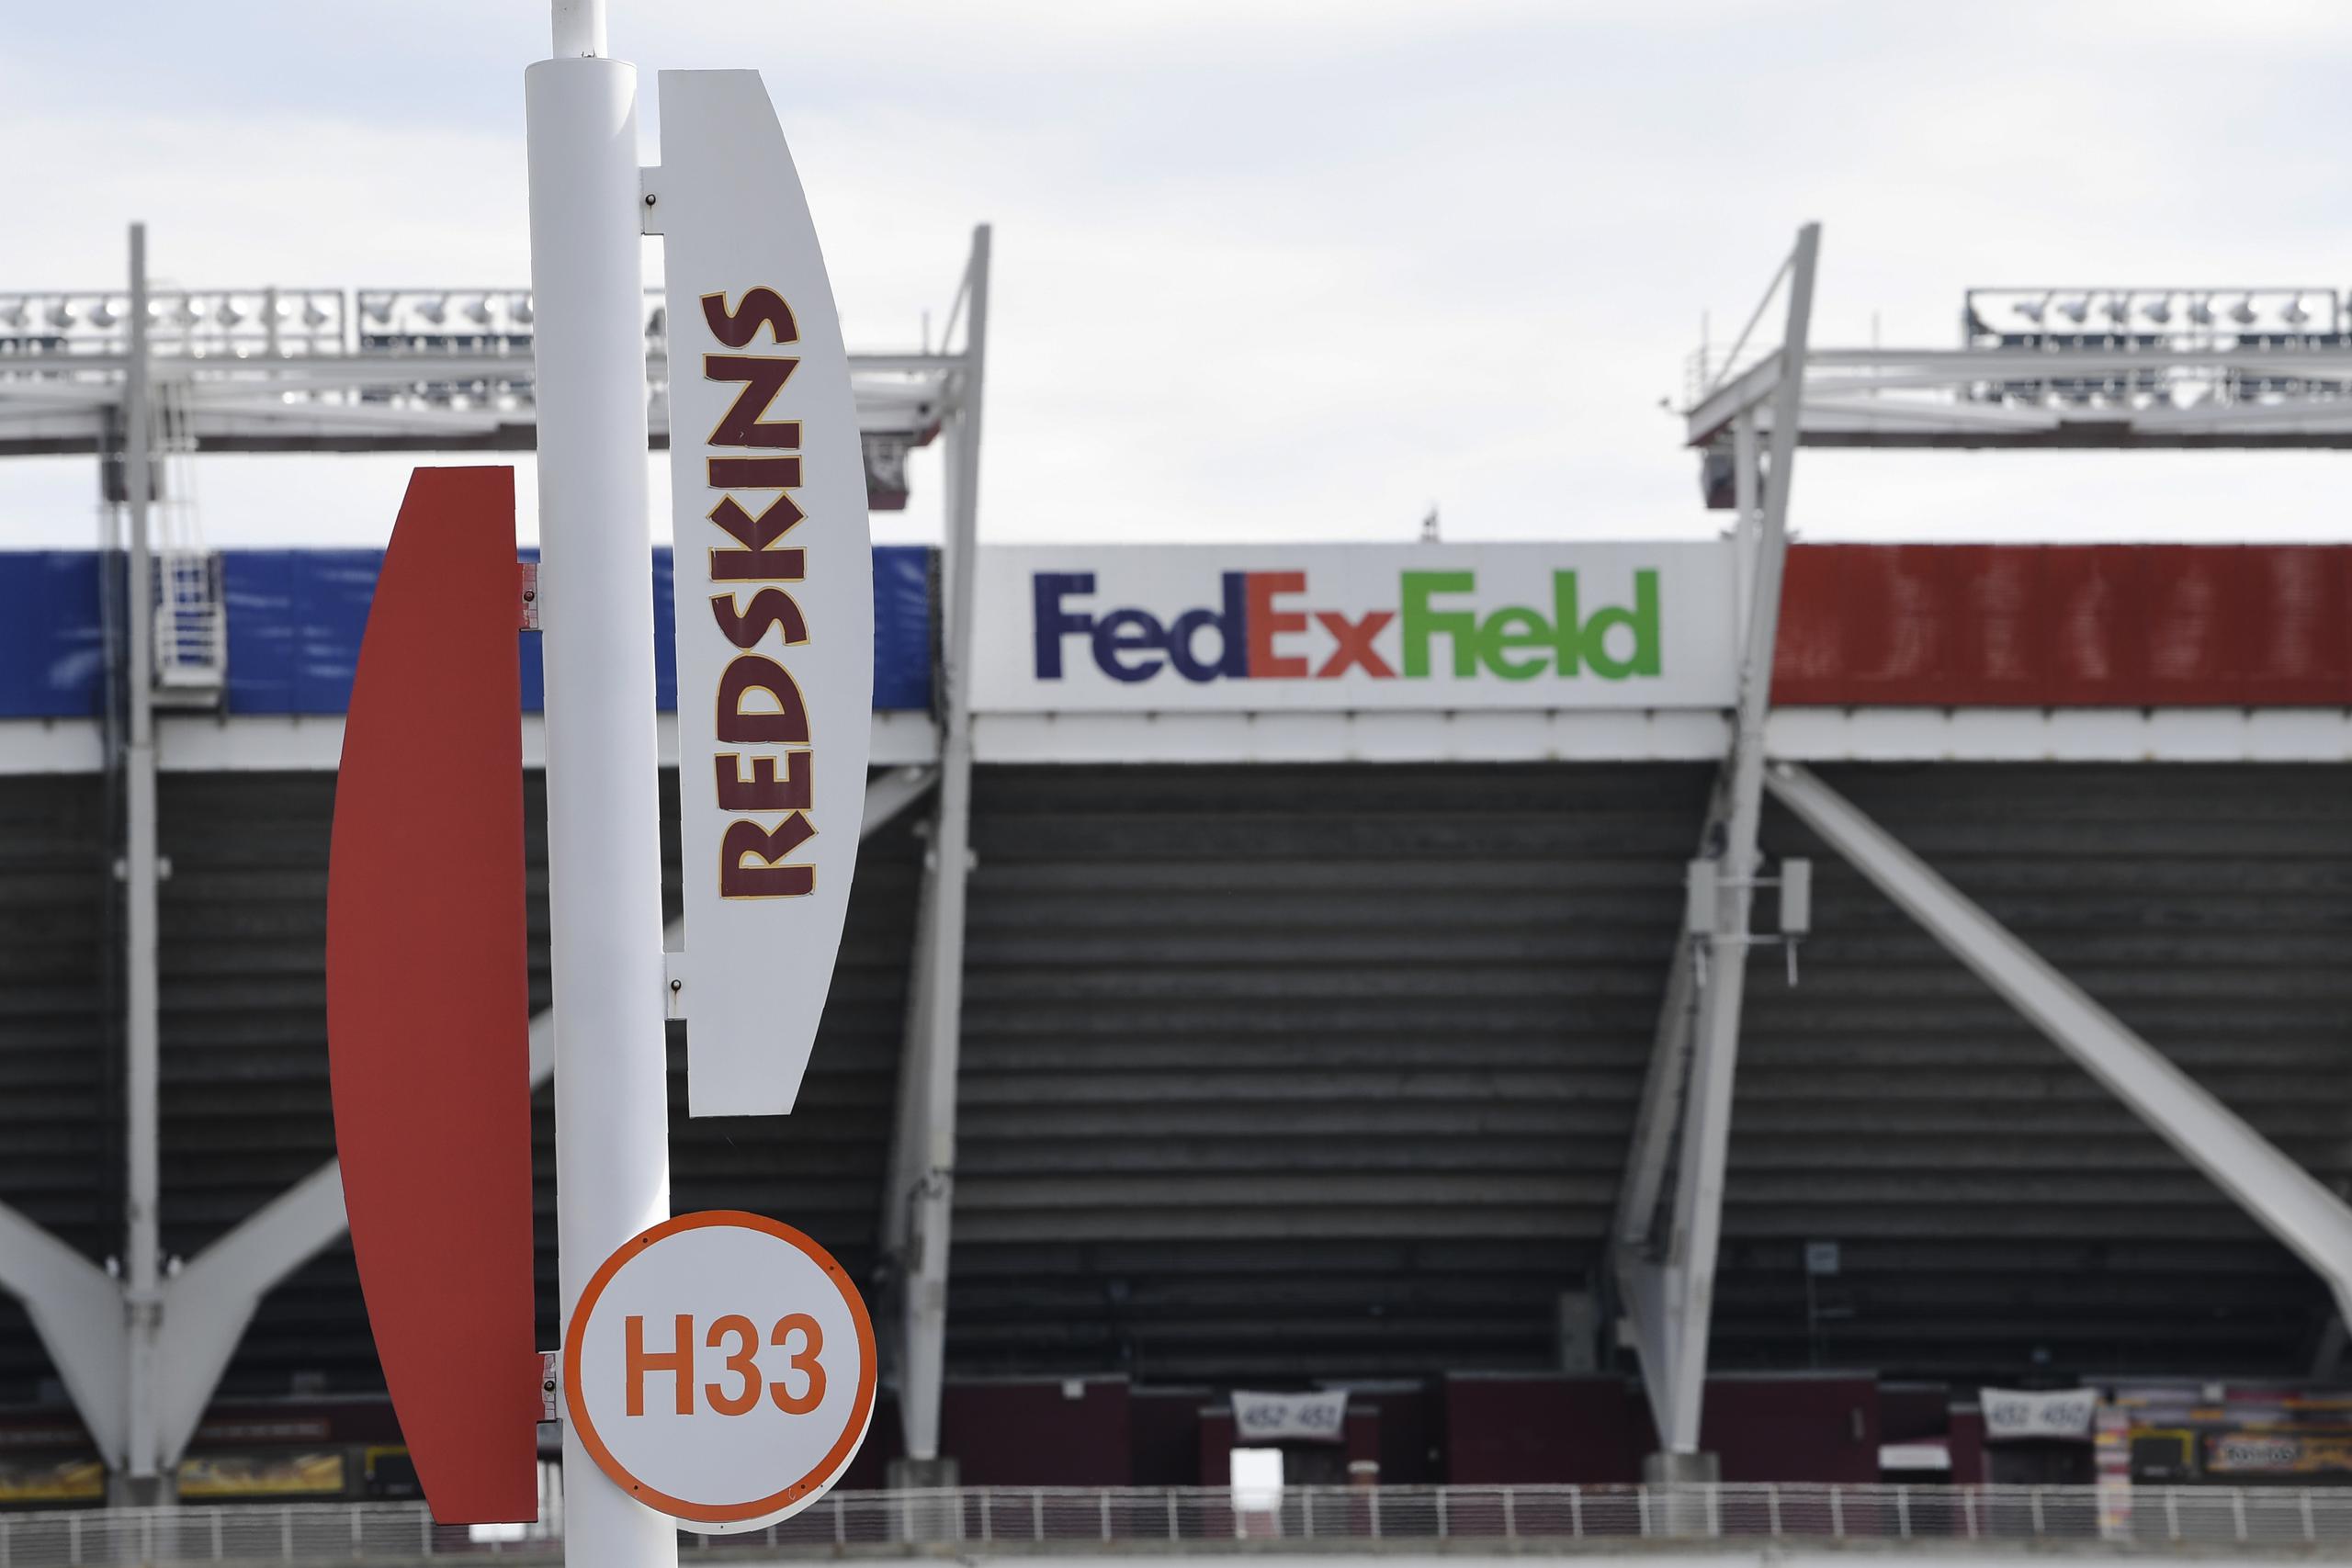 La presión de auspiciadores del equipo, entre ellos FedEx, el patrocinador del estadio, llevó a la franquicia a tomar la decisión que venía ponderando hace semanas.